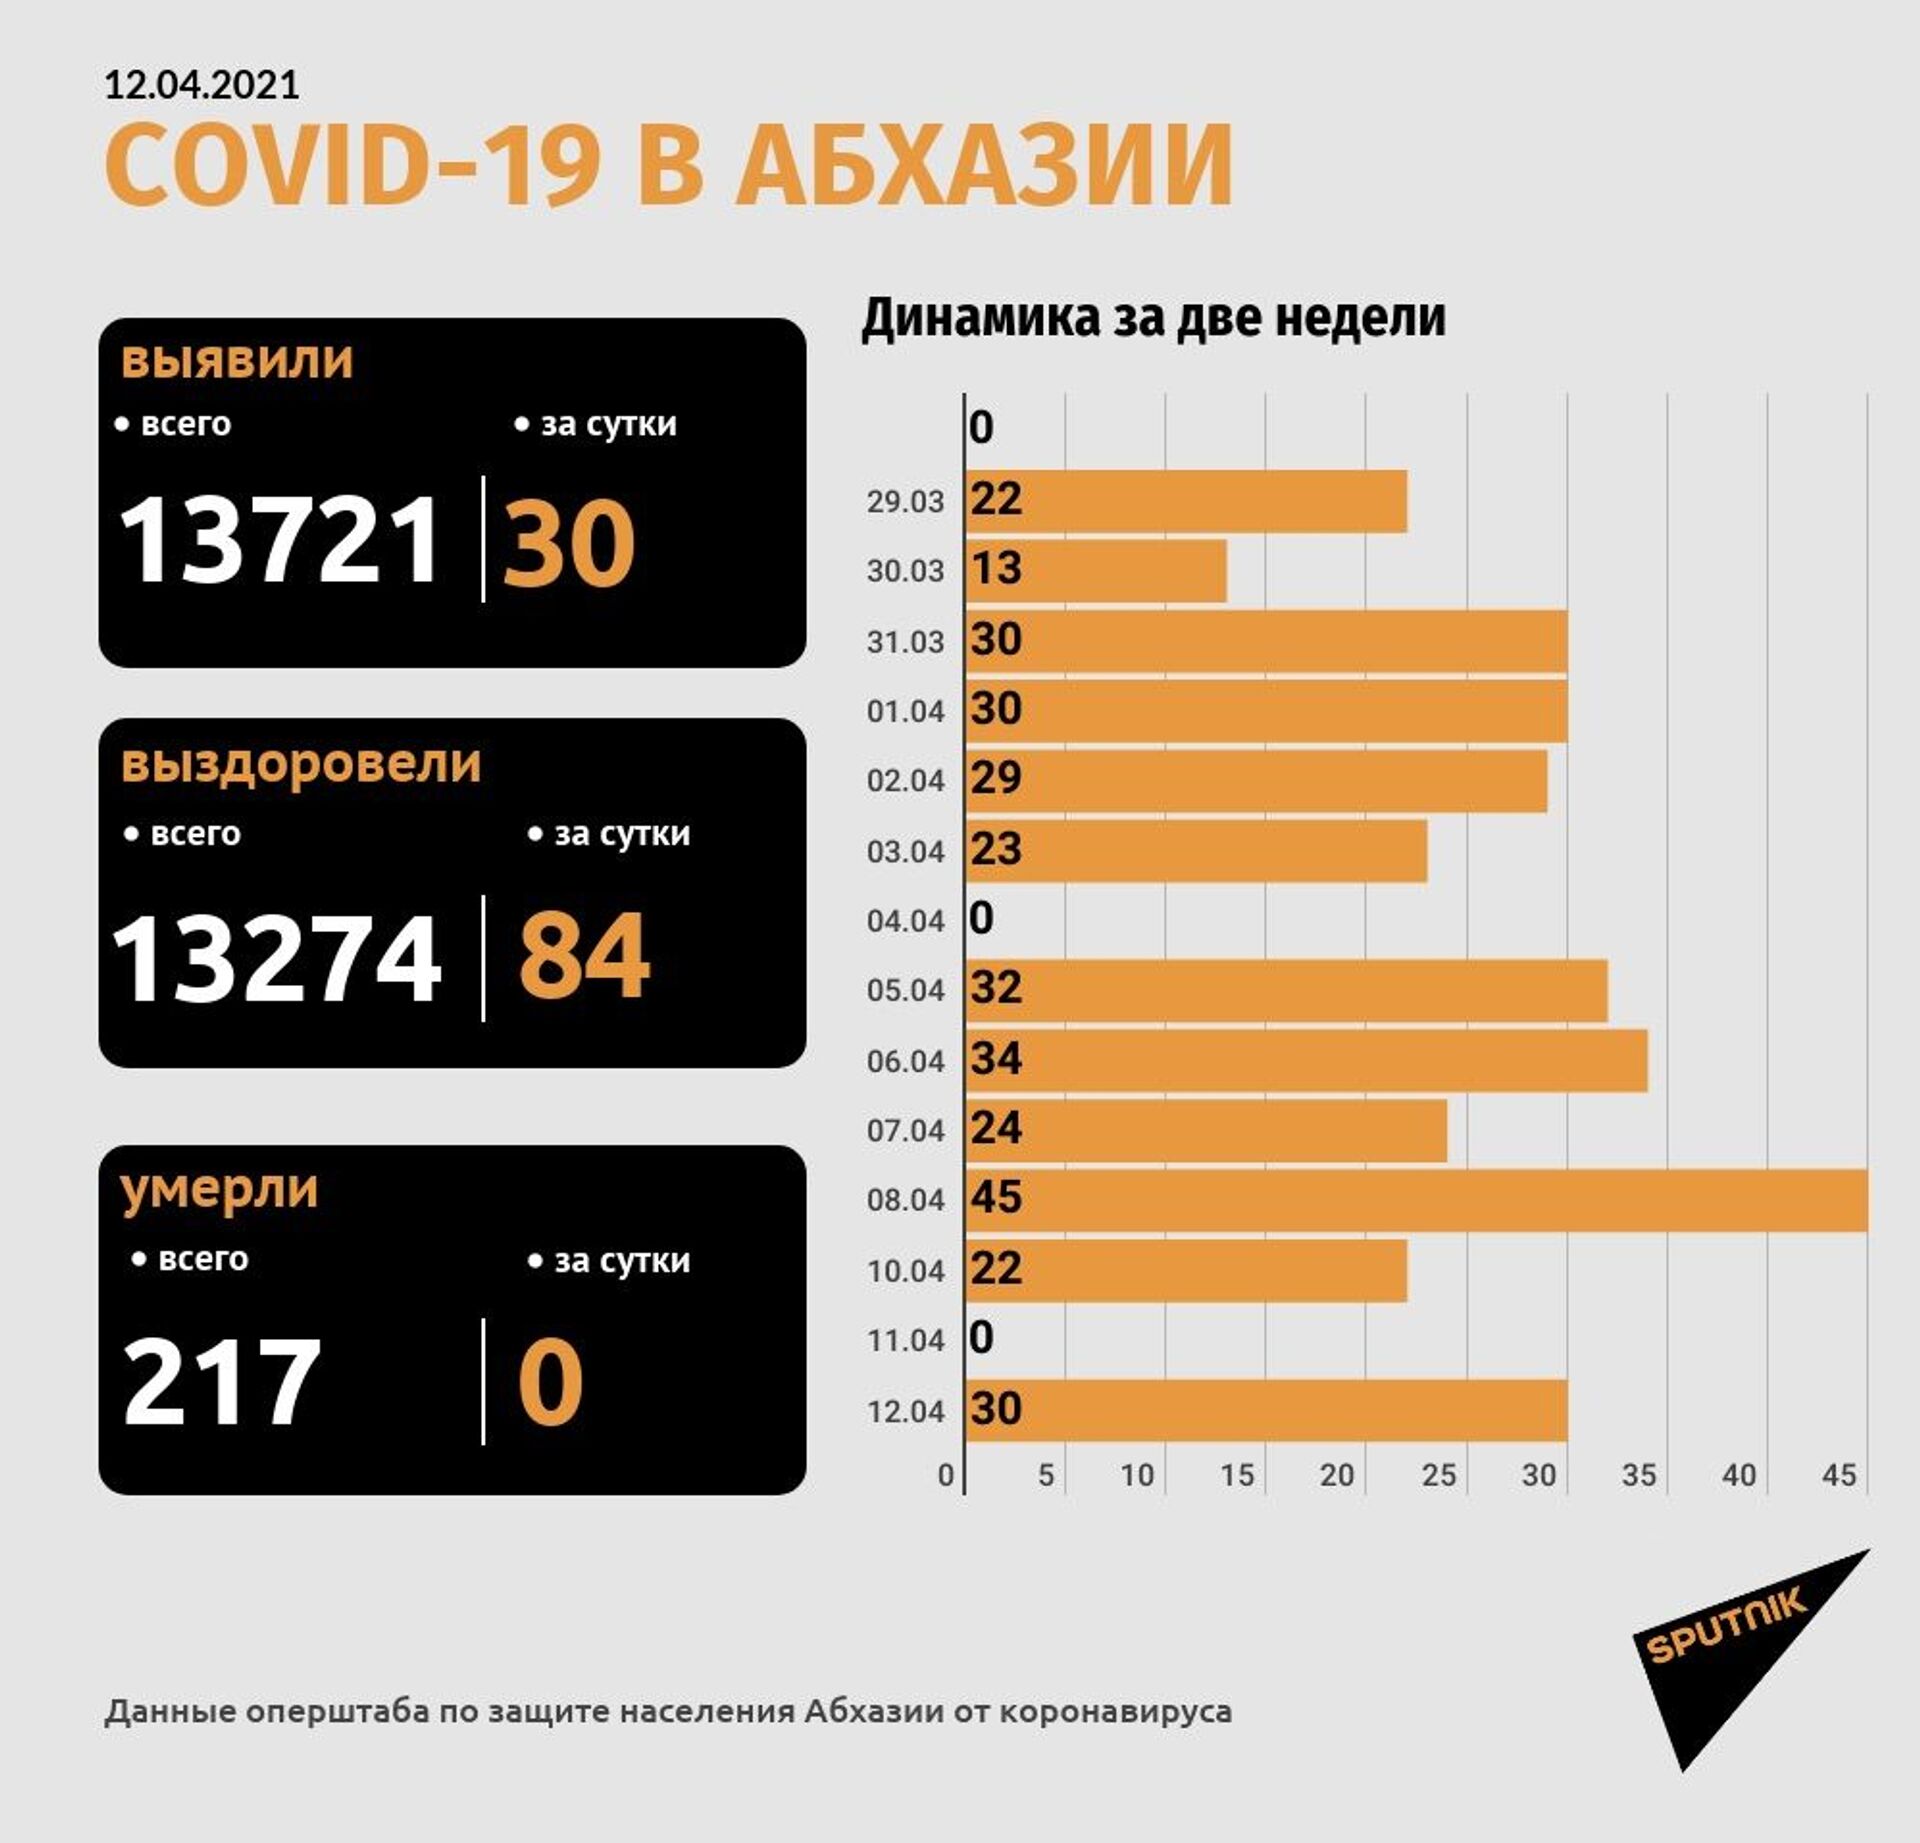 Коронавирус диагностирован еще у 30 человек в Абхазии - Sputnik Абхазия, 1920, 12.04.2021